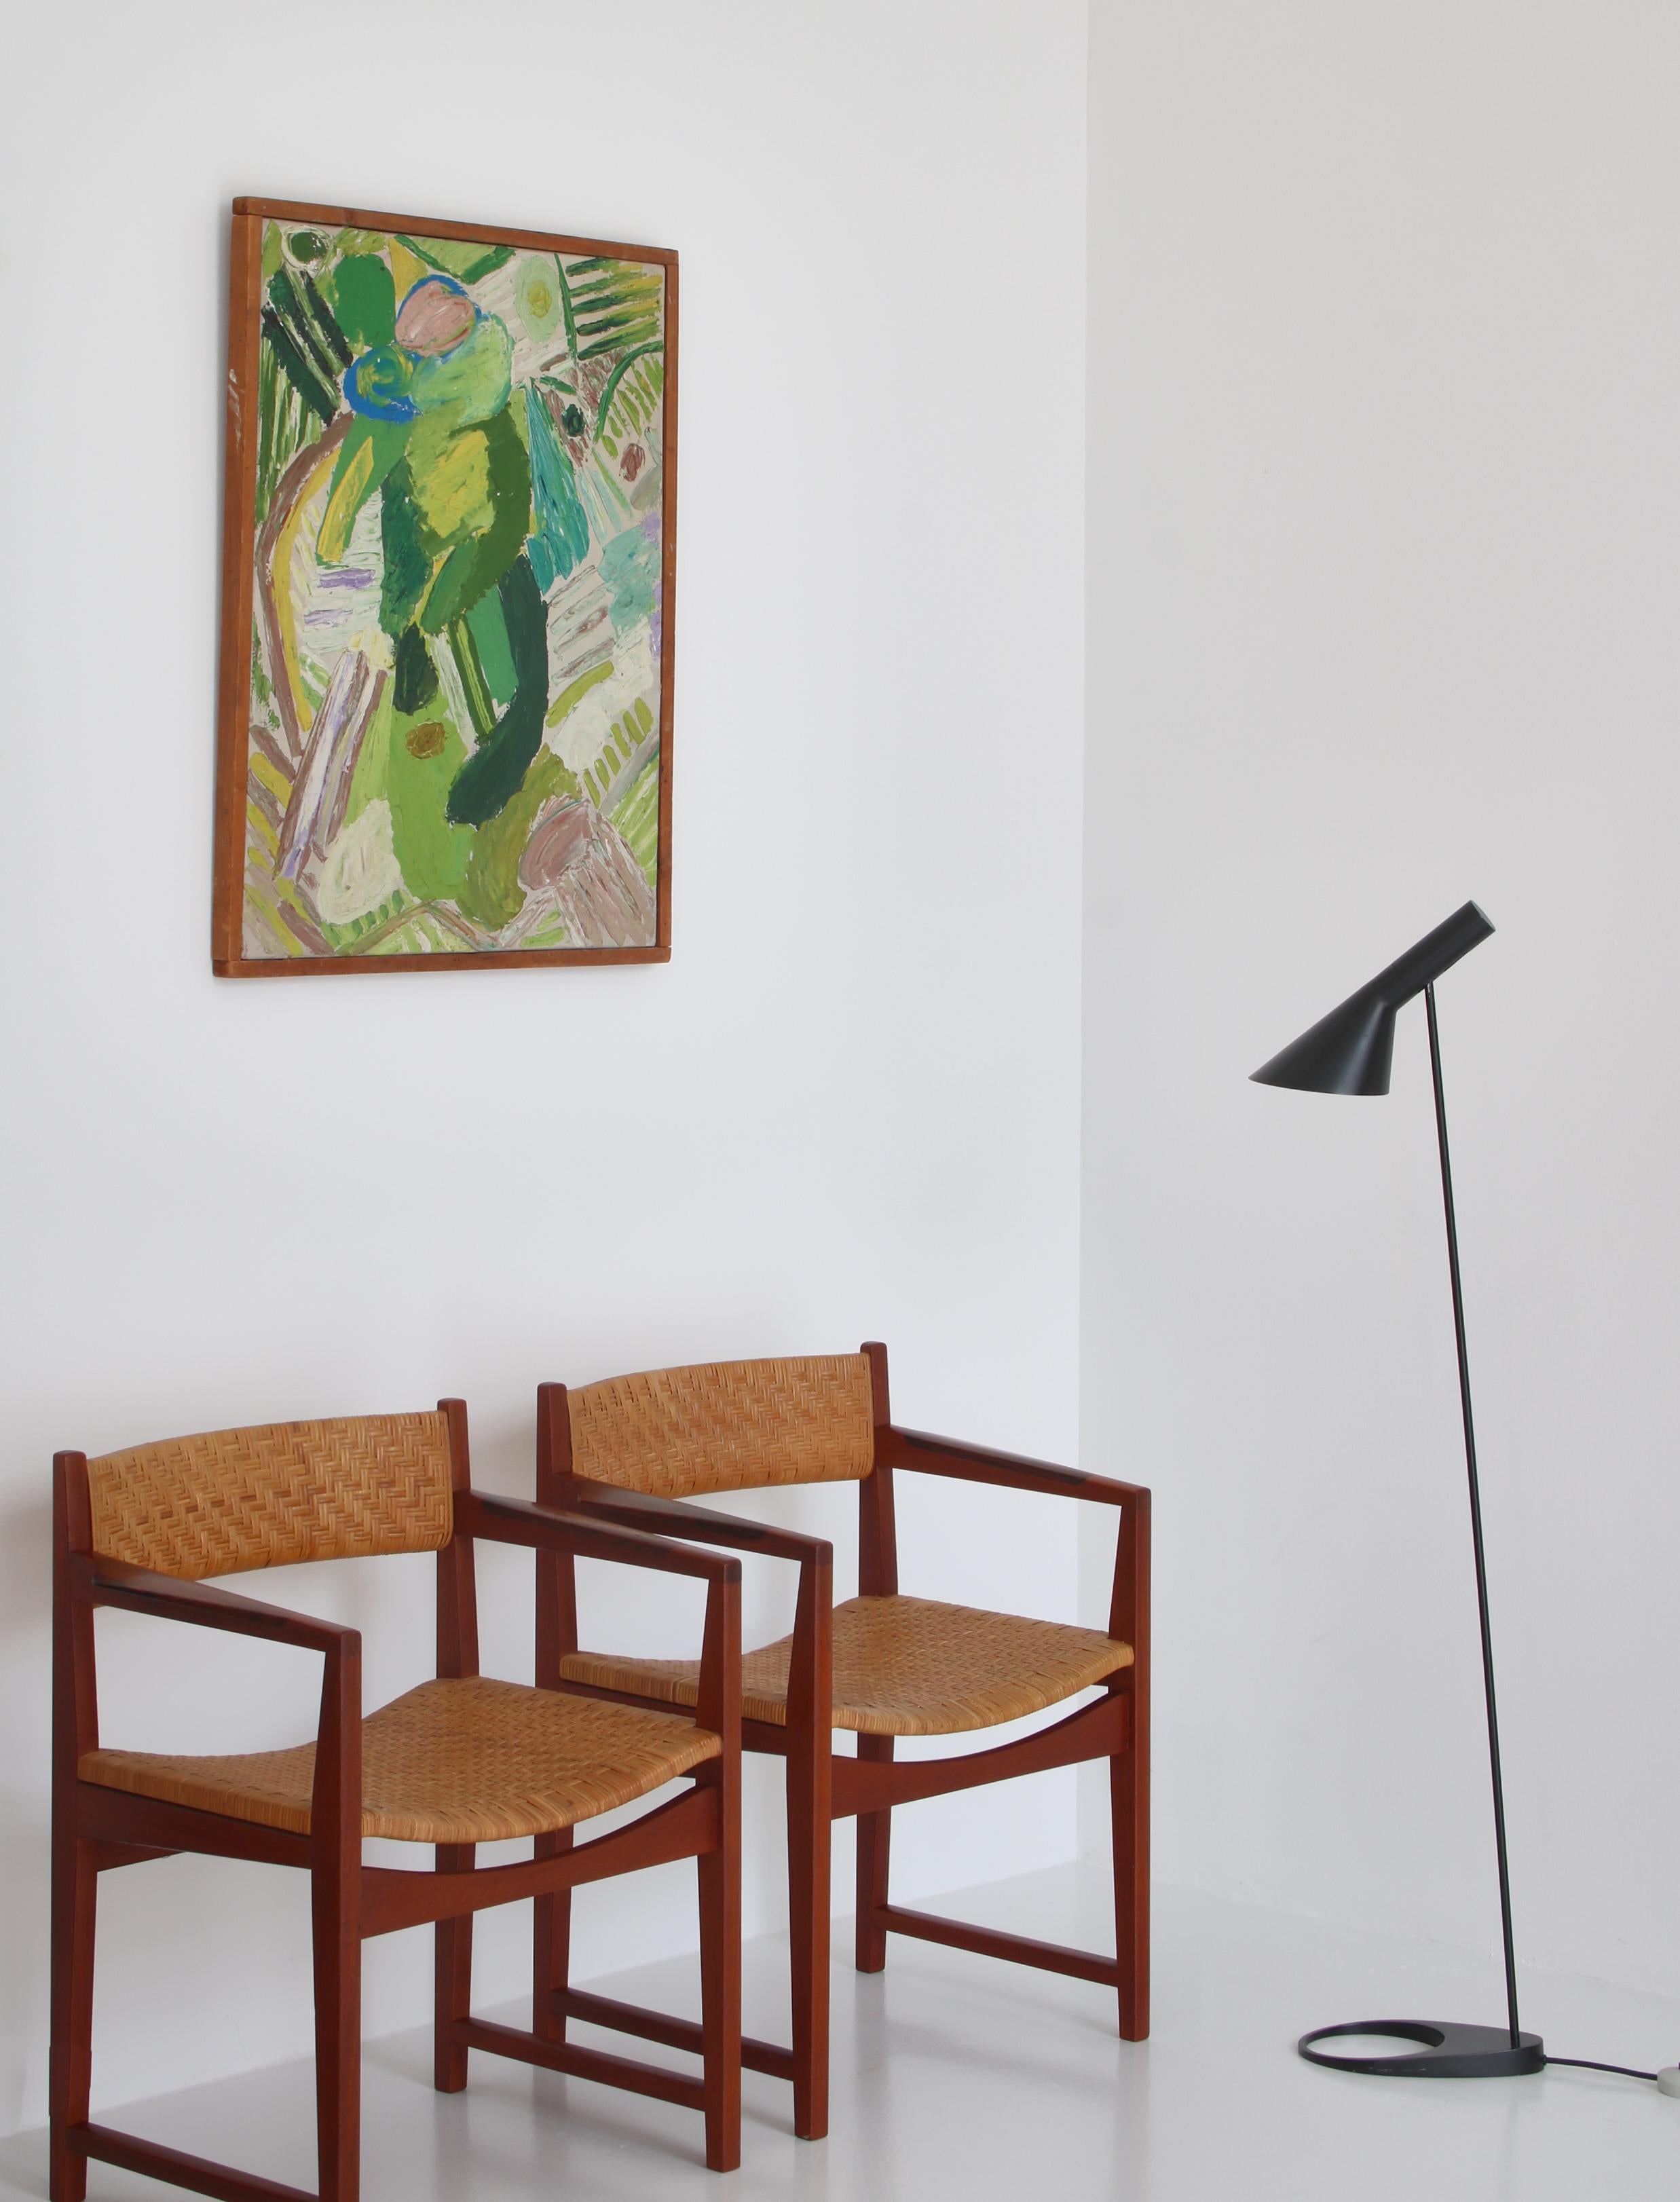 Superbe ensemble de fauteuils vintage fabriqués à la fin des années 1950 à Søborg Møbelfabrik, Copenhague par Peter Hvidt & Orla Molgaard Nielsen. Les chaises sont fabriquées en bois de teck massif de Bangkok et présentent des incrustations de bois